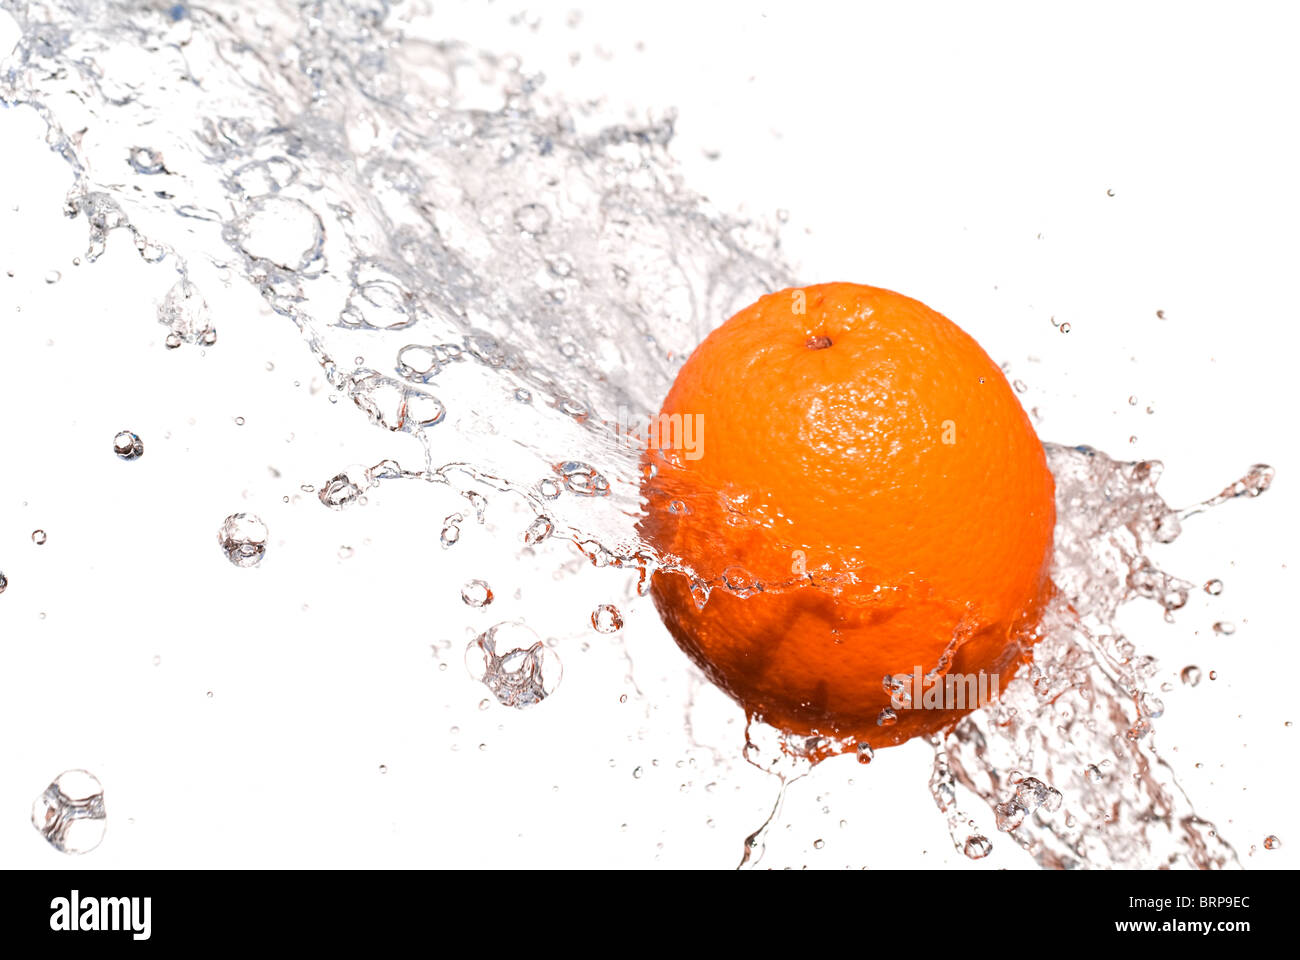 orange and splashes Stock Photo